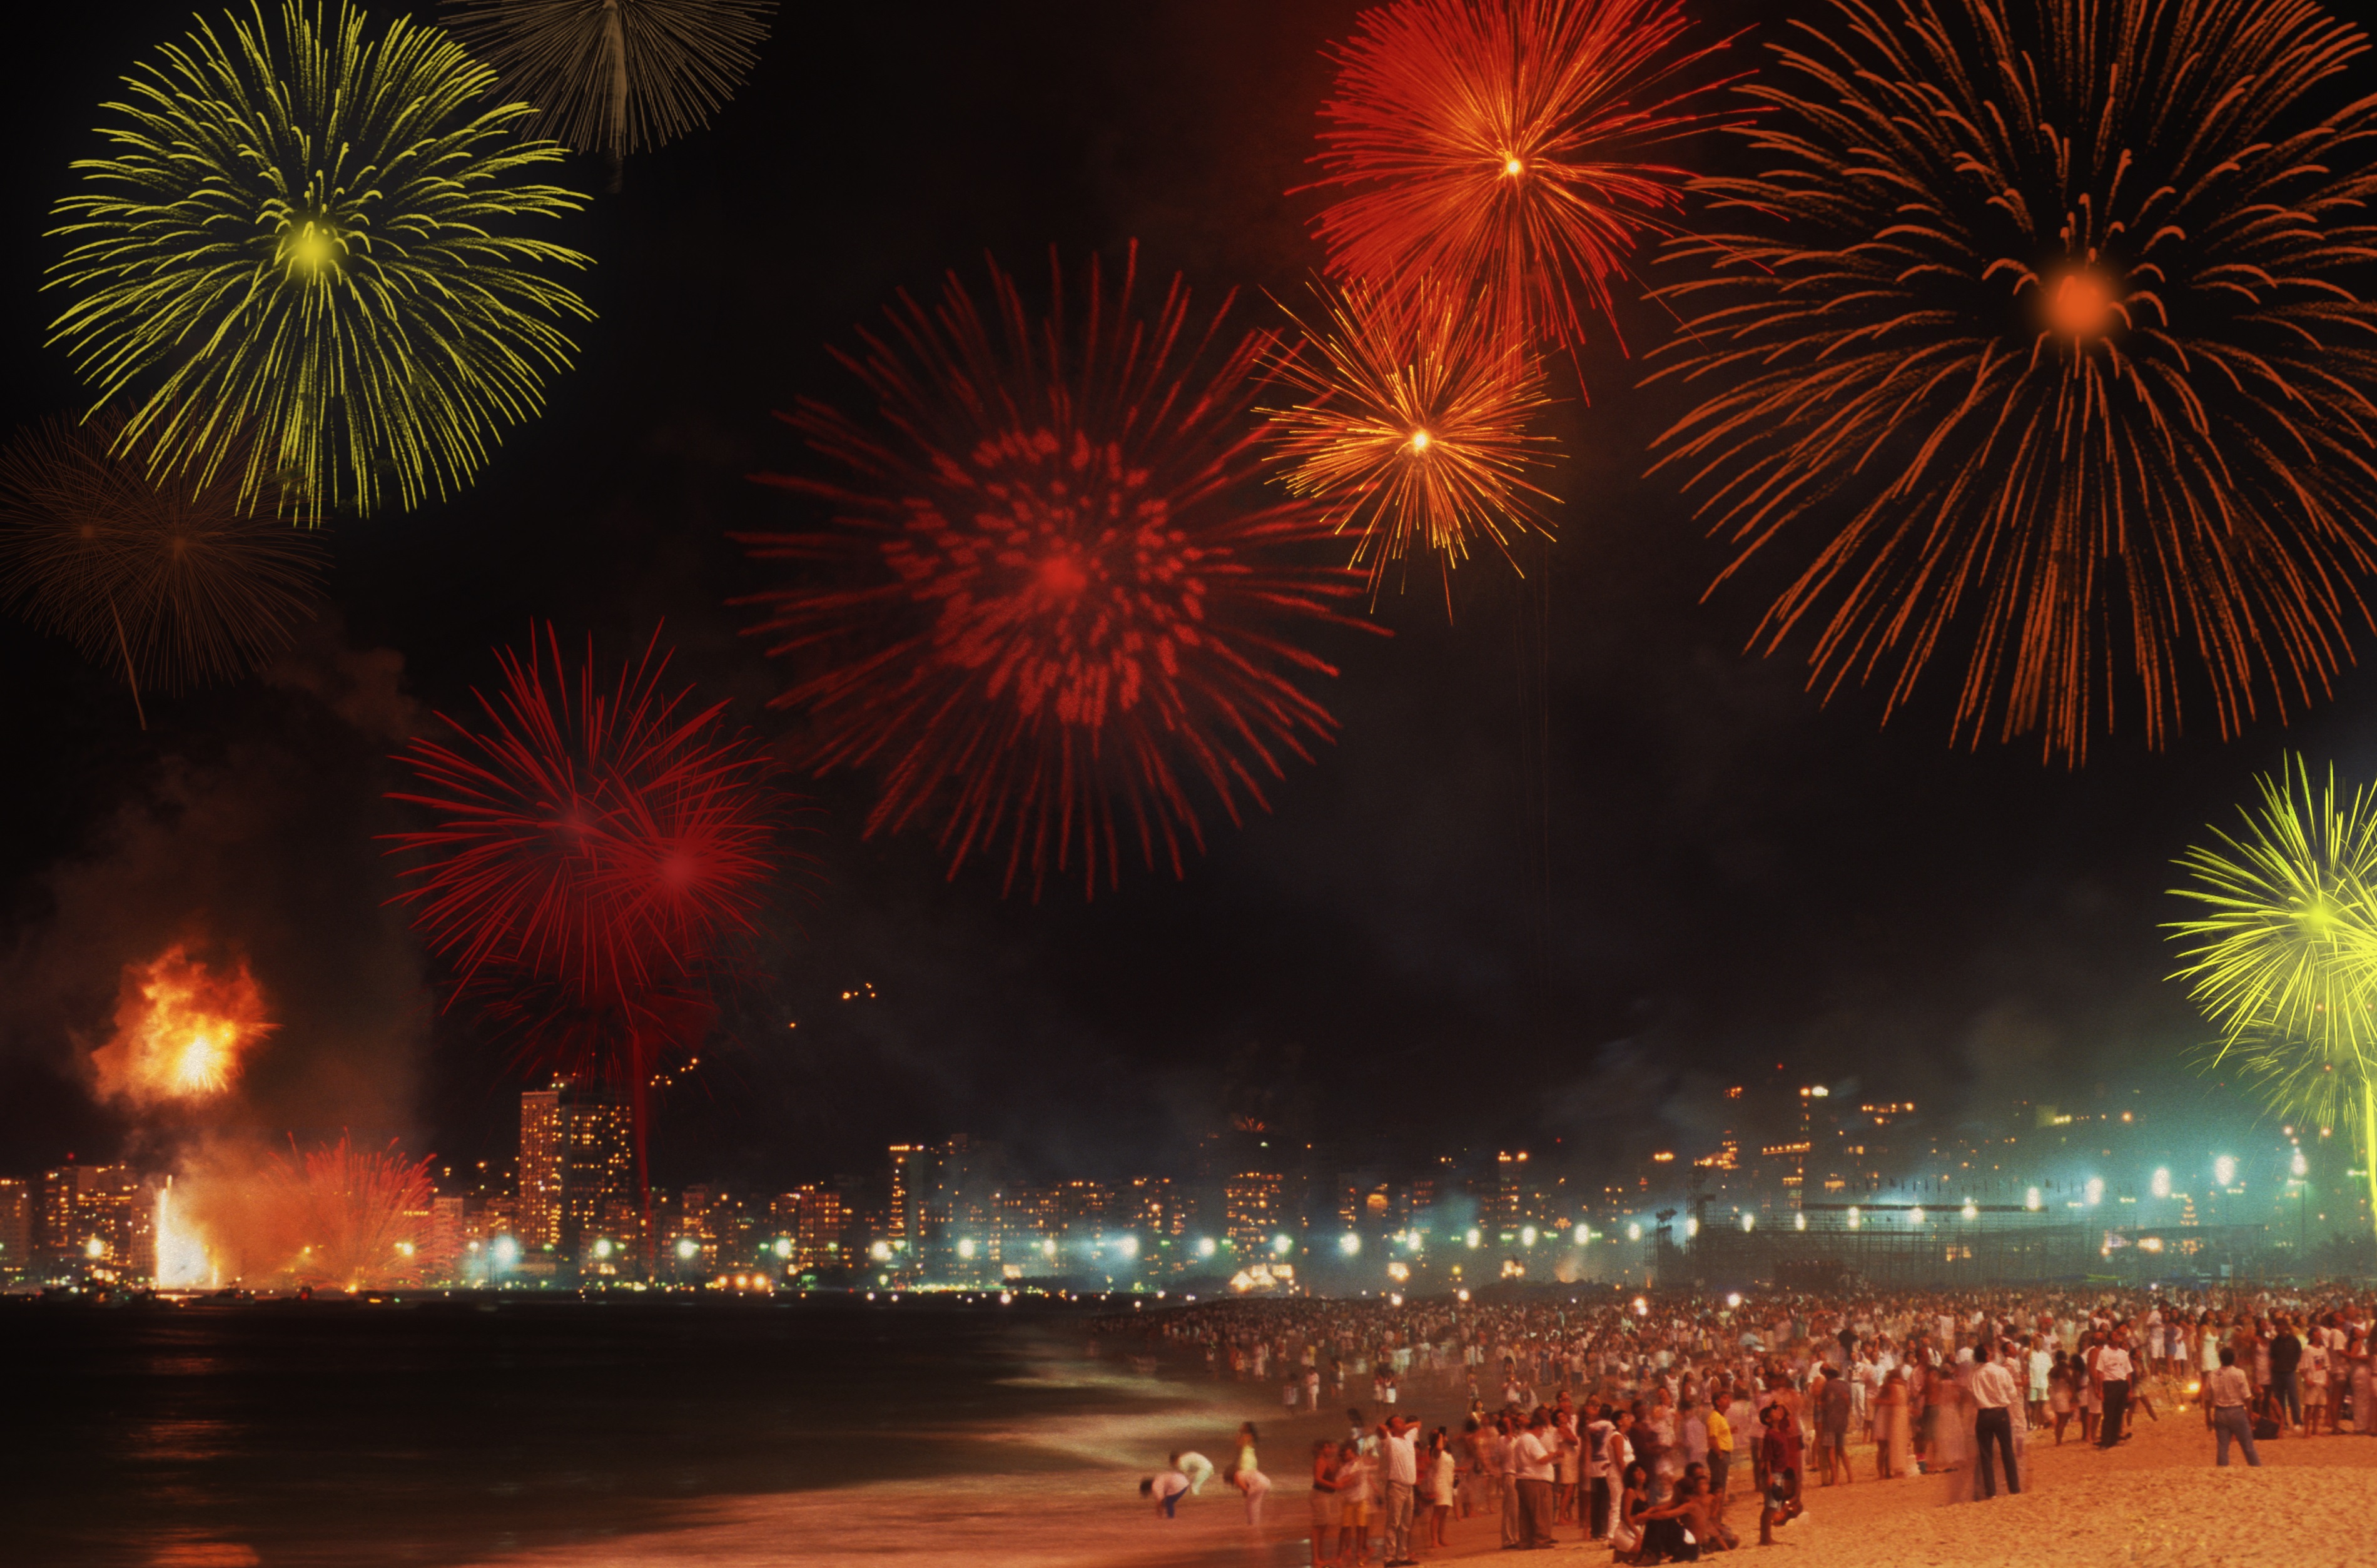 <p><strong>Рио де Жанейро</strong></p>

<p>Ако искате да посрещнете Нова година заедно с още около 2 млн. души на топъл плаж &ndash; Рио е вашето място. Плажът Копакабана е най-горещото място за Нова година, което предлага концерти и уникални фойерверки.</p>